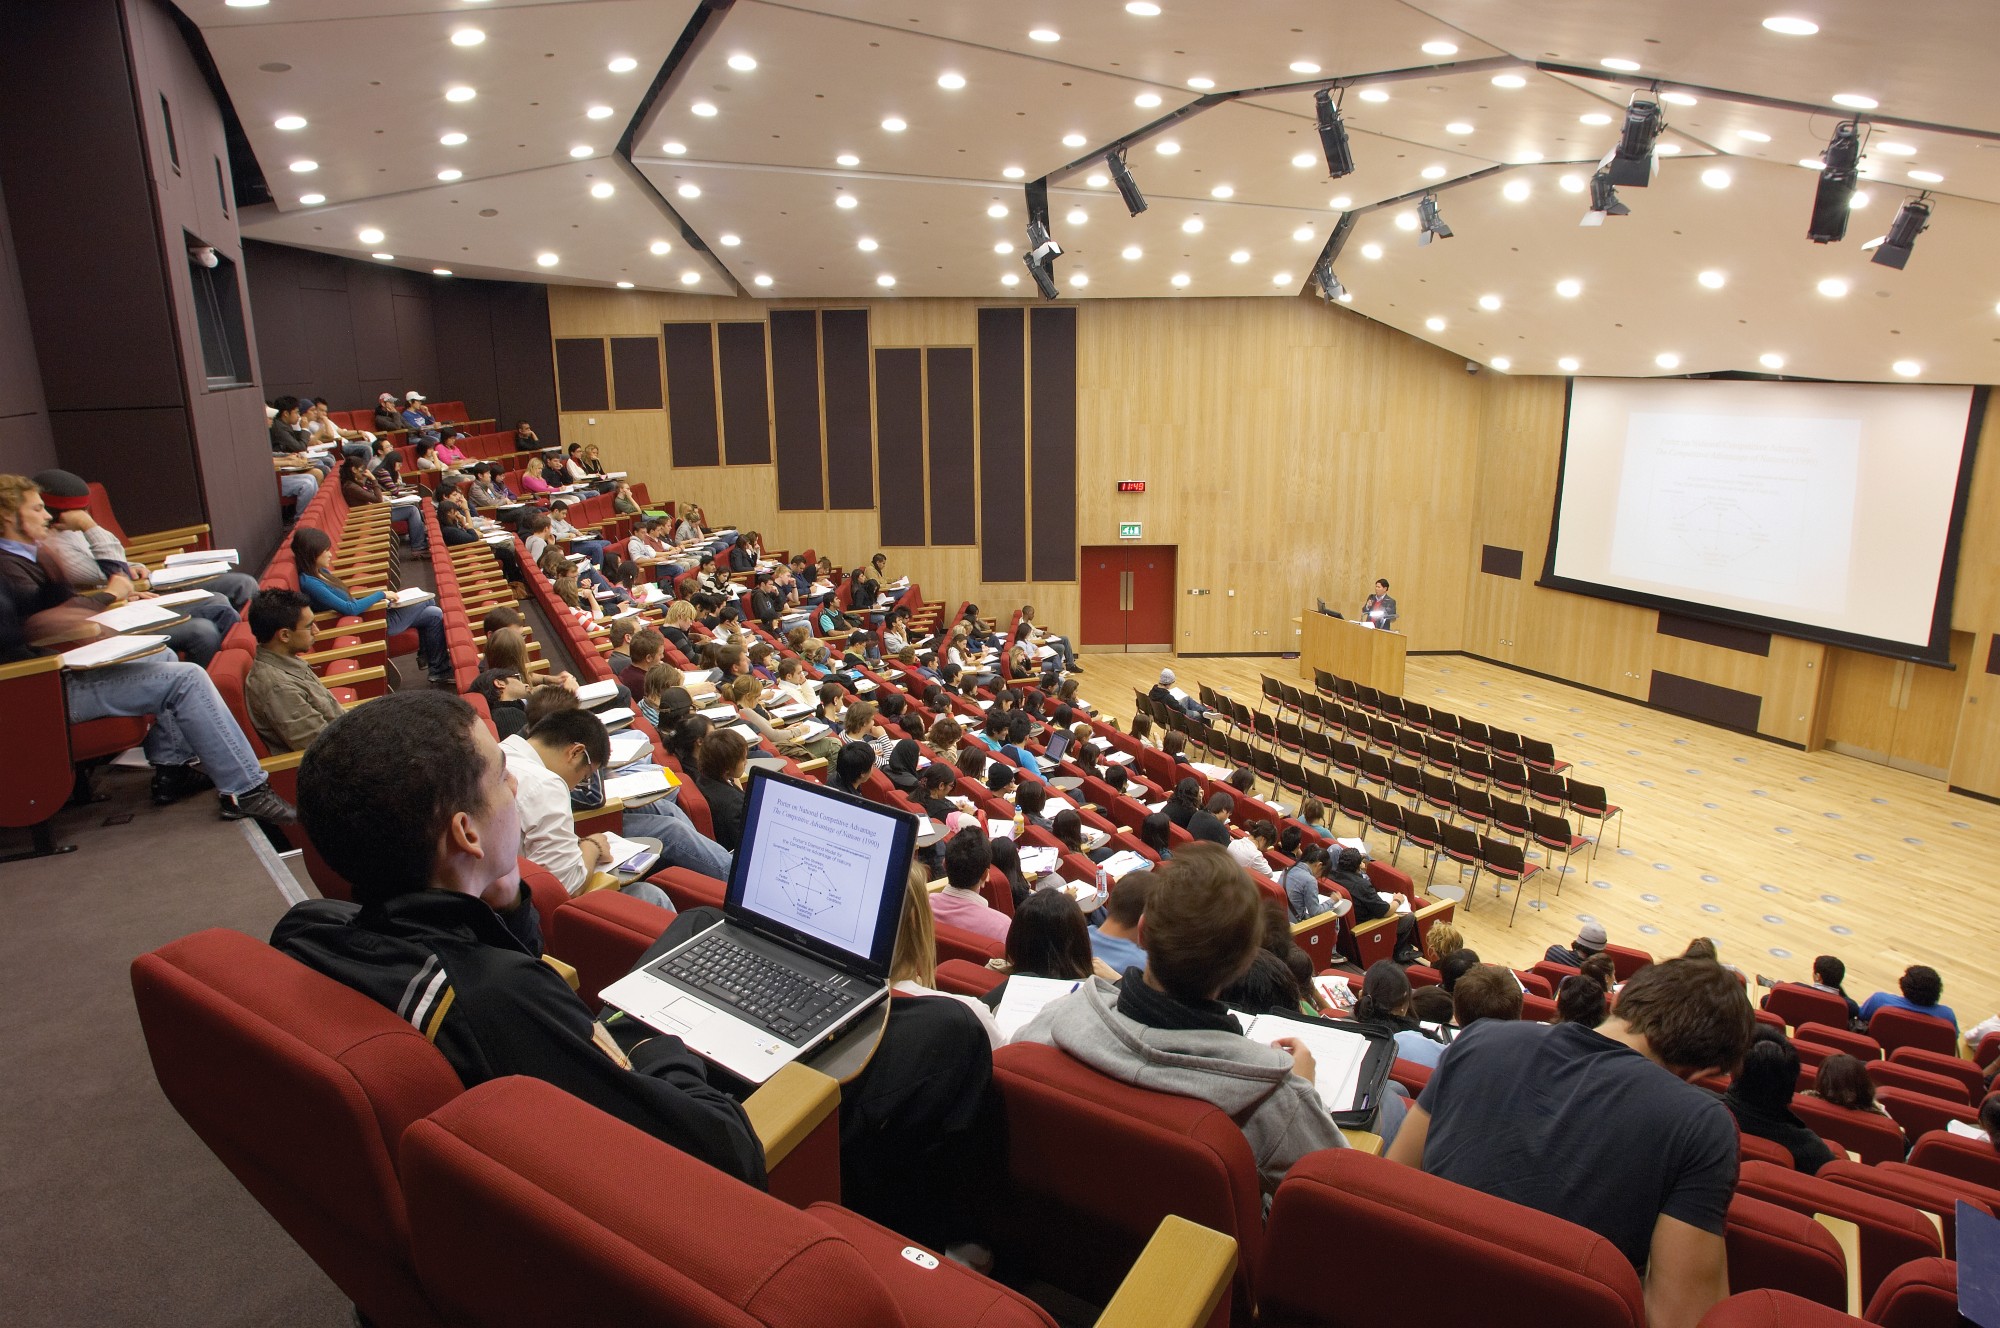 lecture-in-windsor-auditorium